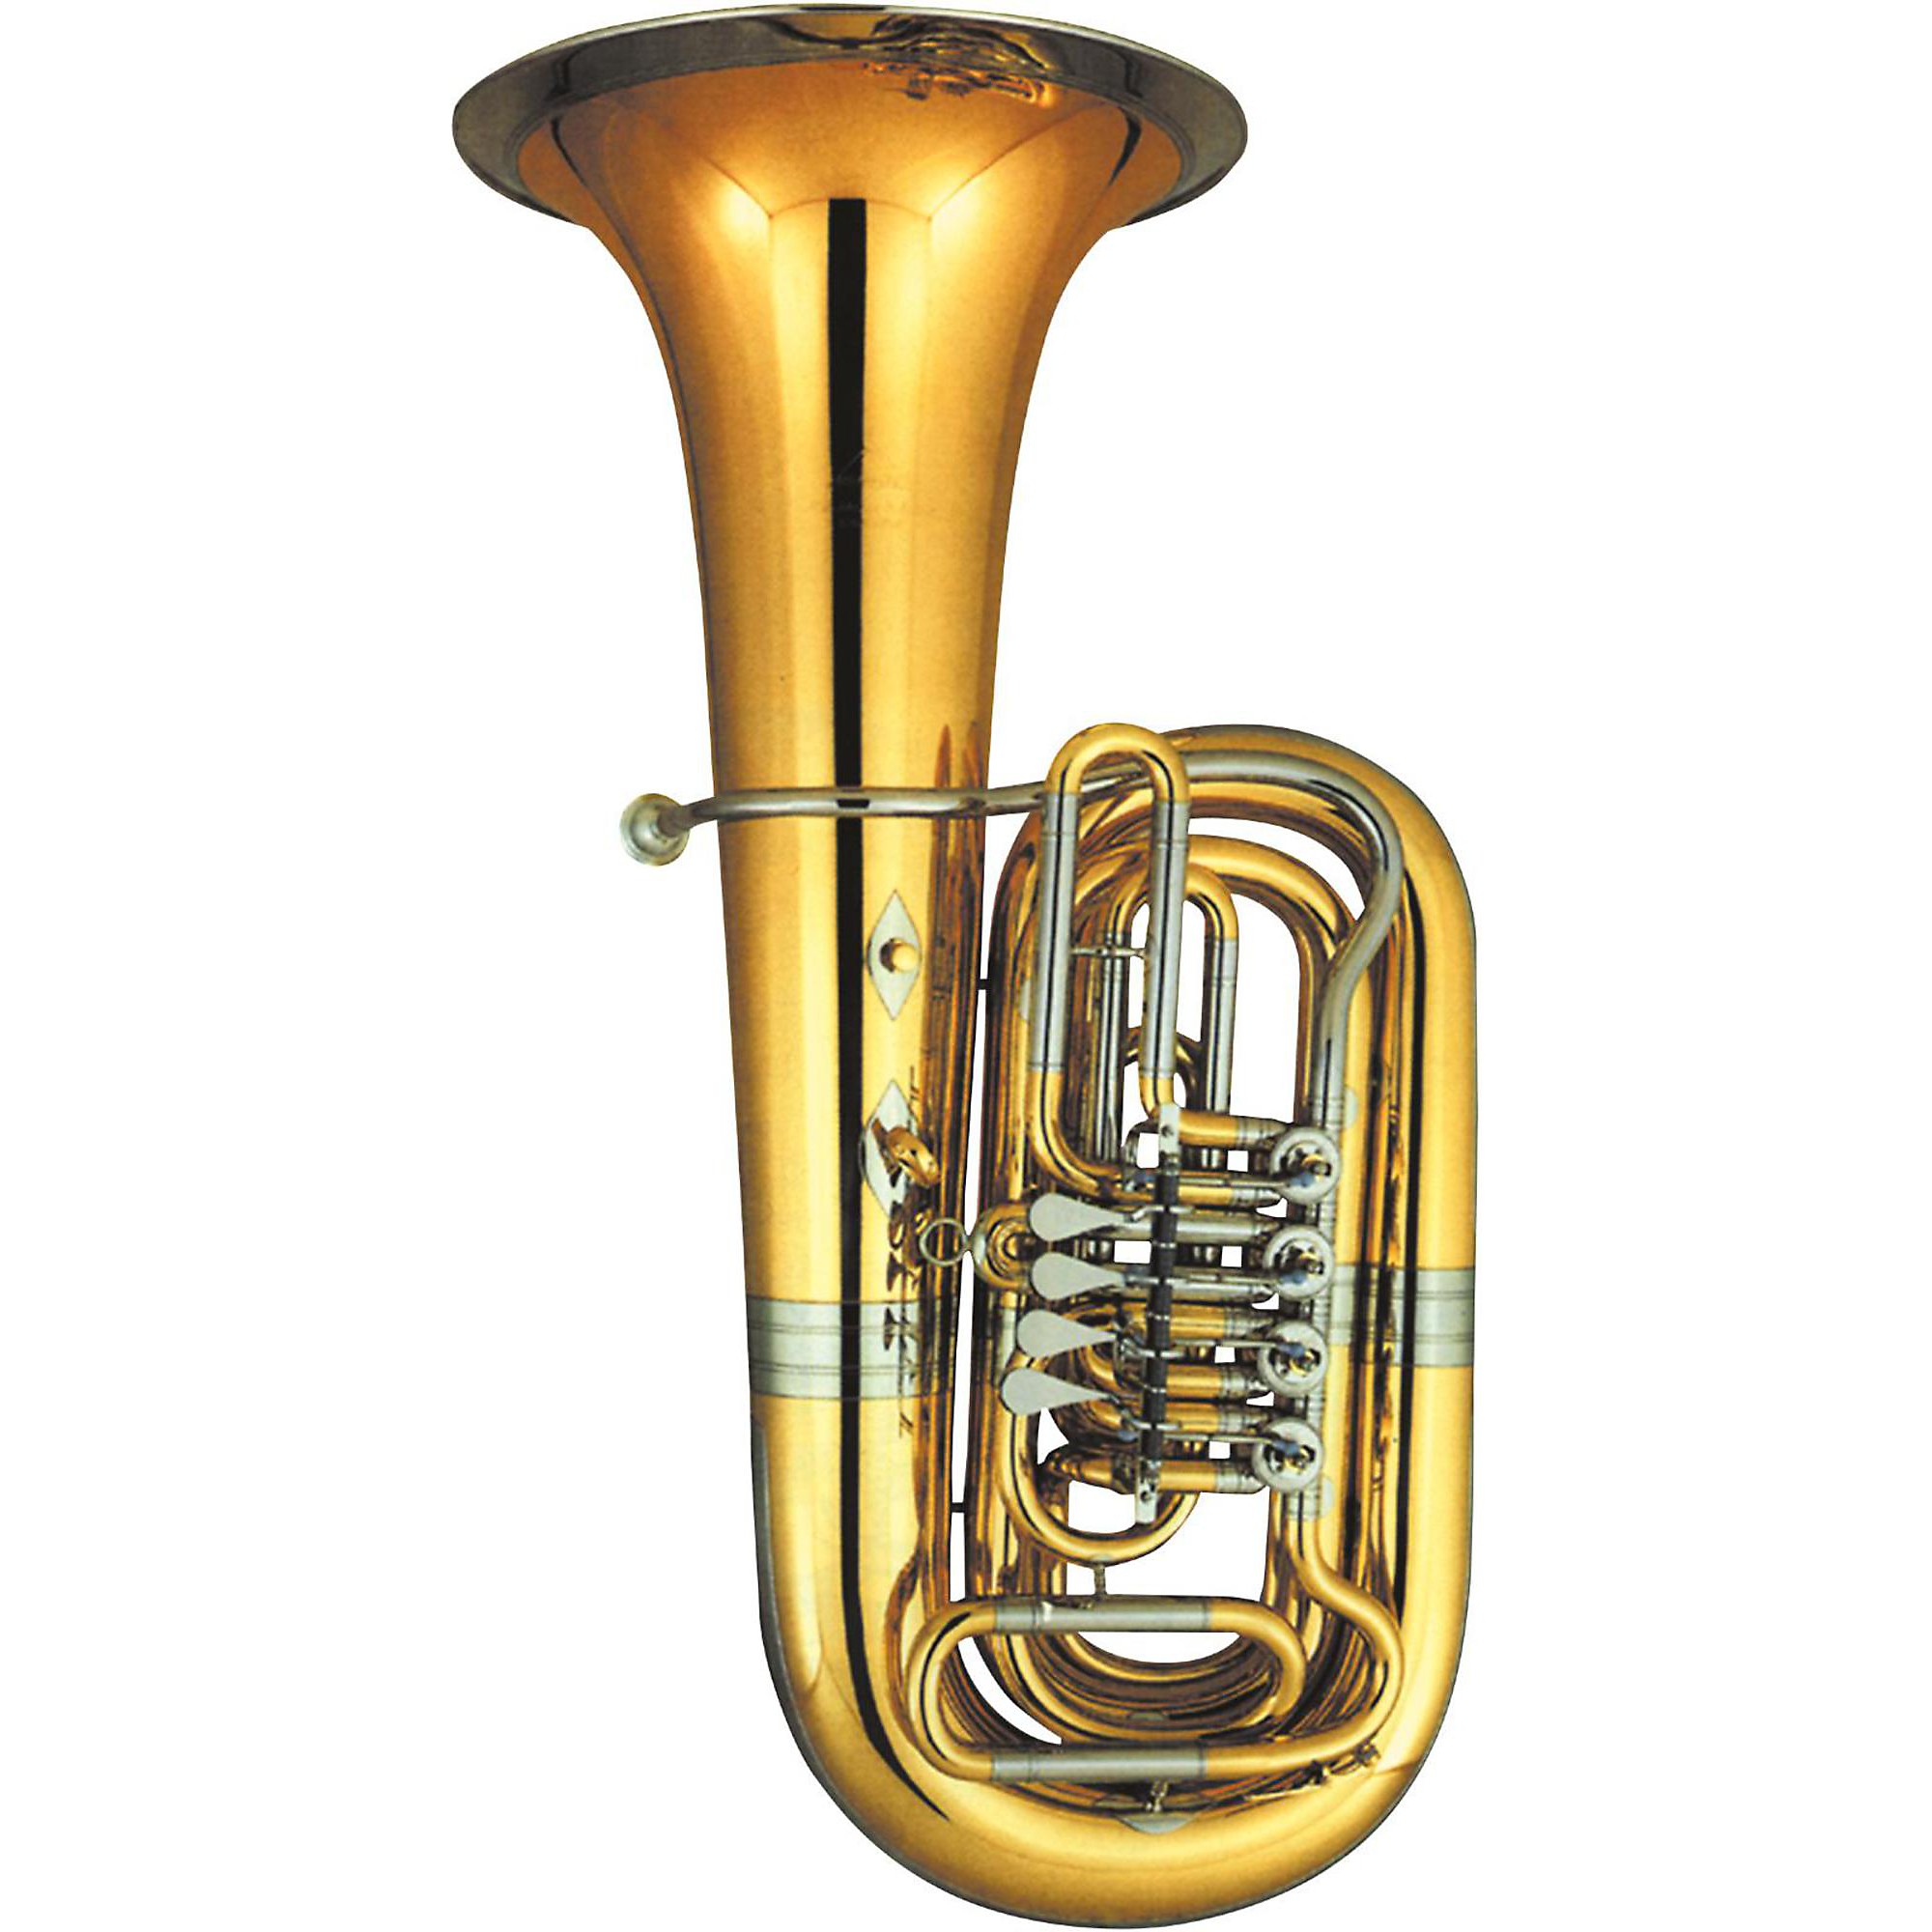 186 Tuba Mouthpiece Stock Photos - Free & Royalty-Free Stock